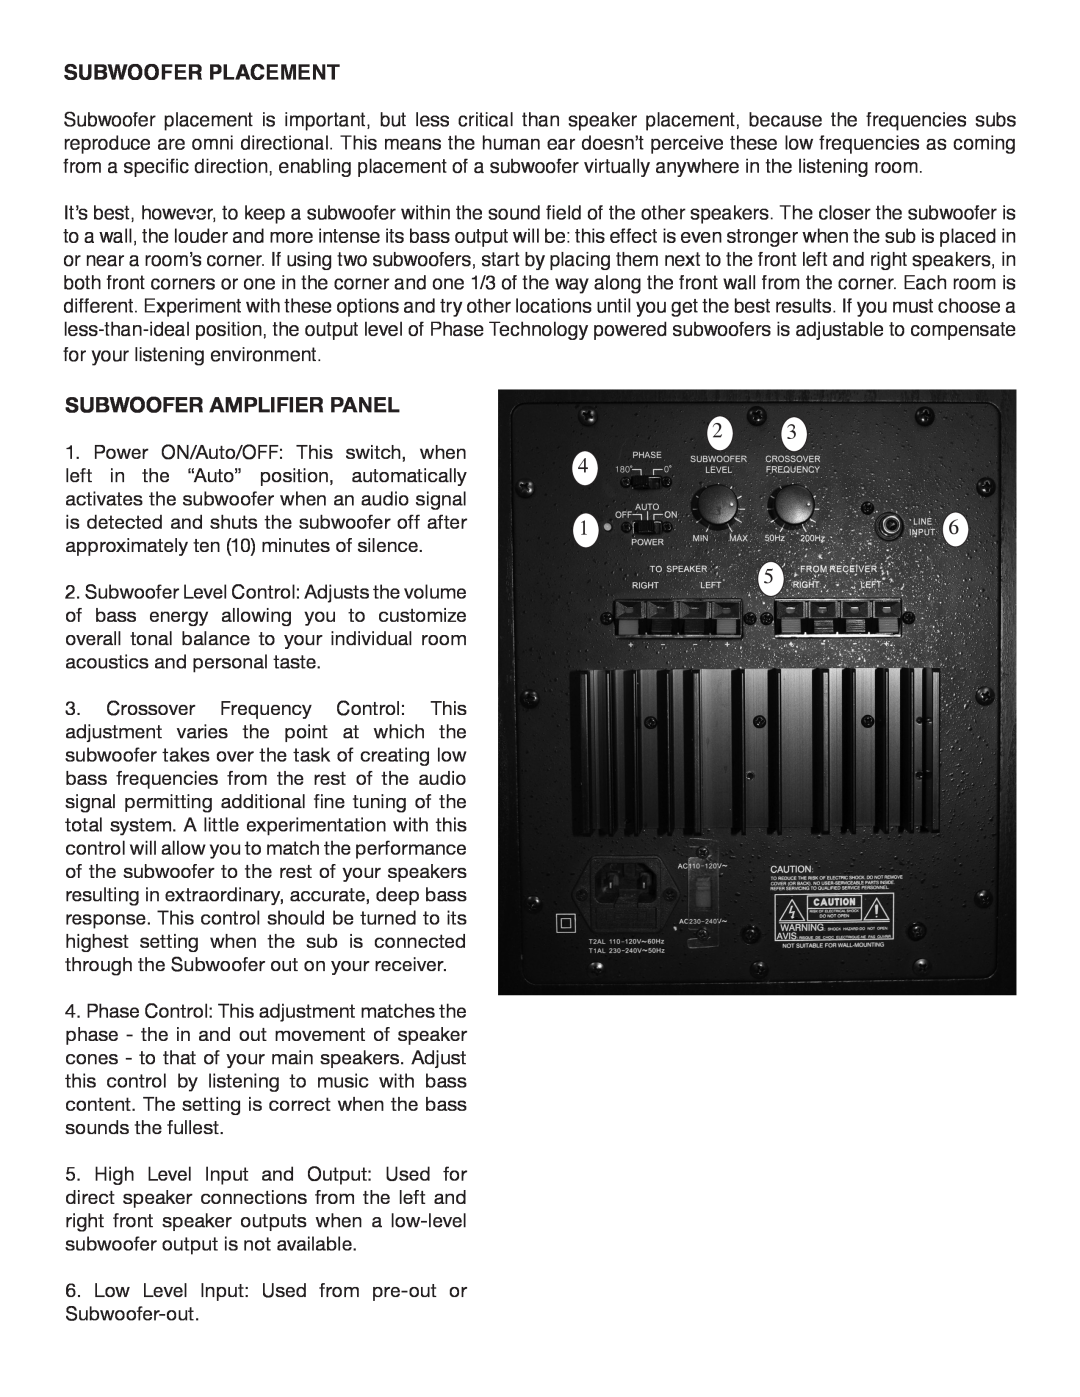 Phase Technology HV121, HV101, HV81 owner manual Subwoofer Placement, Subwoofer Amplifier Panel 